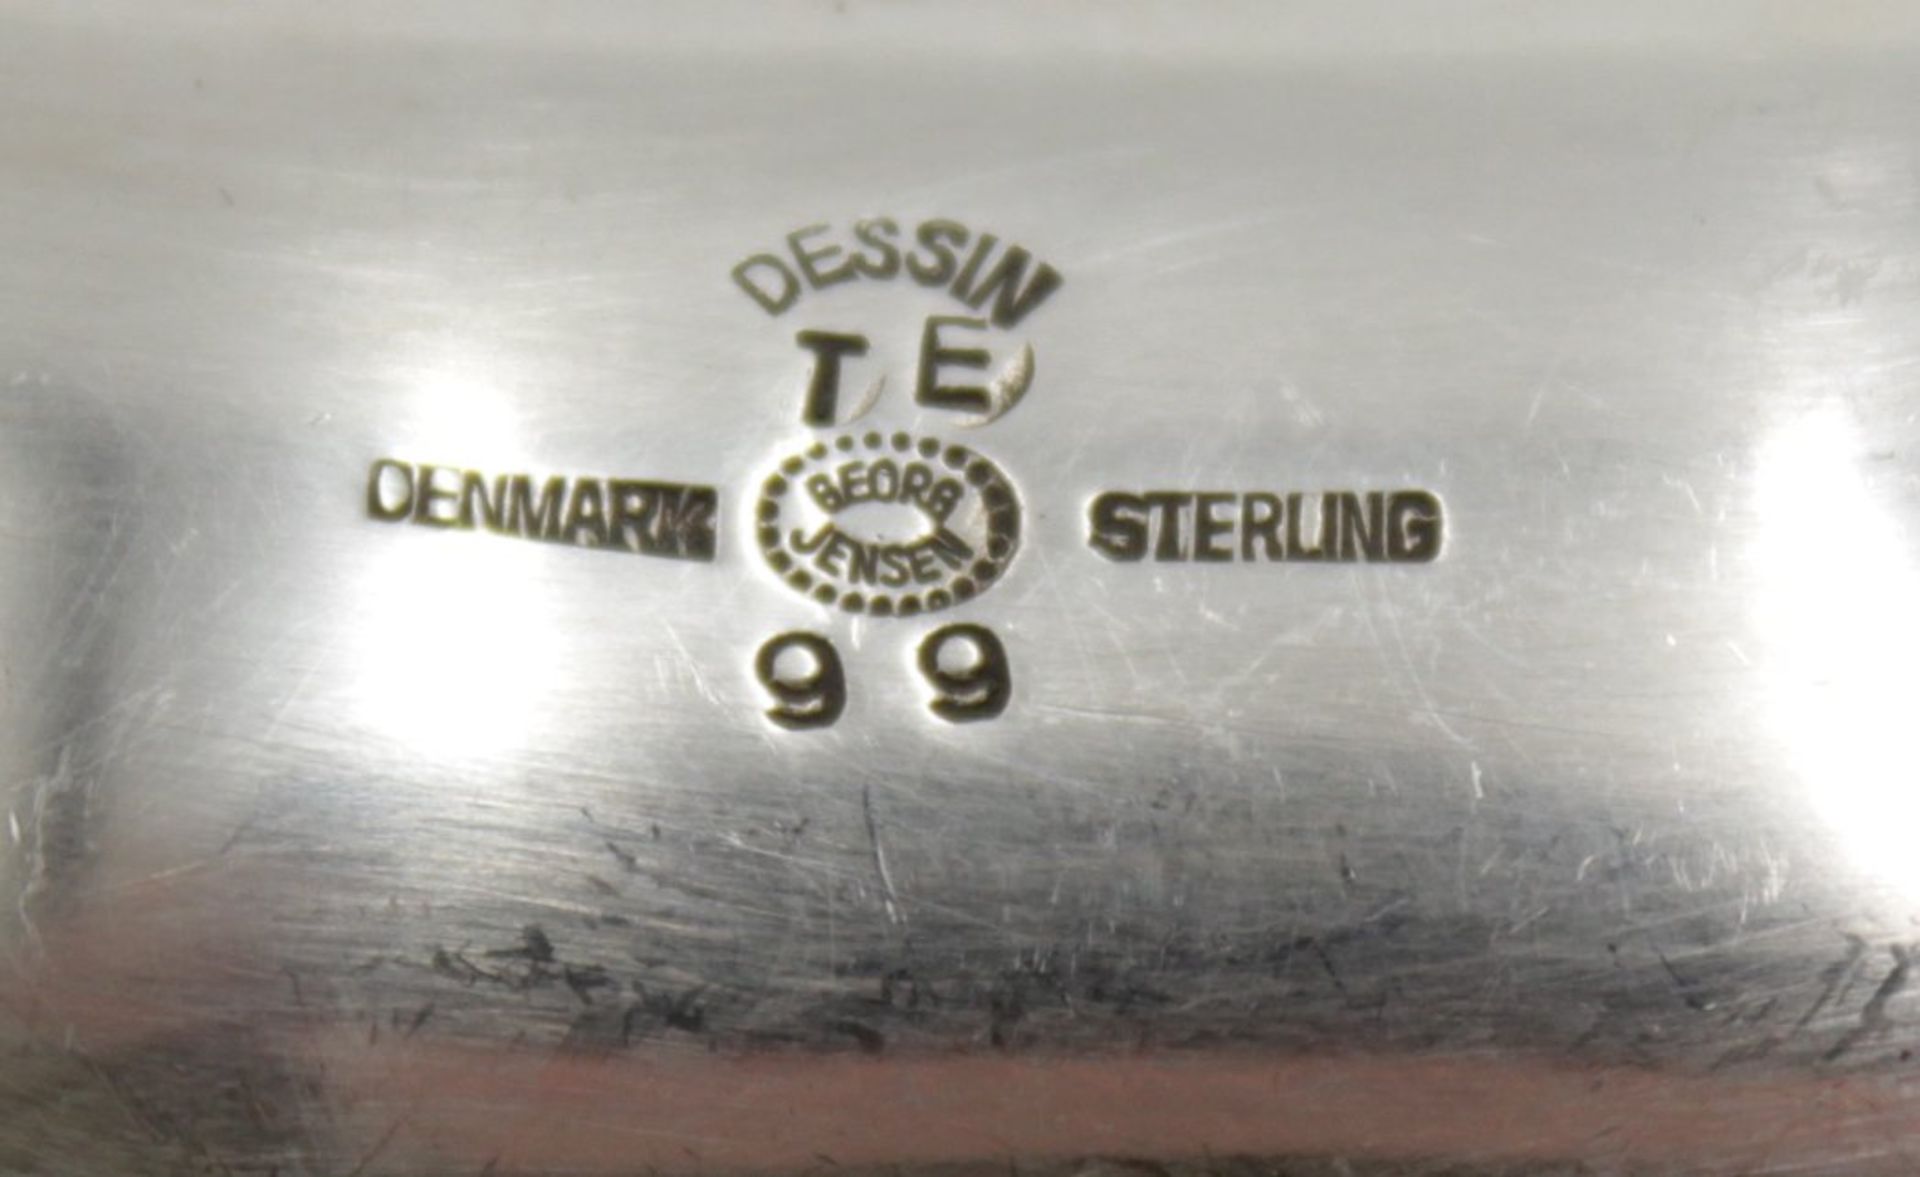 Serviettenring, Georg Jesnen, Sterling, Nr. 99, 36,25gr., 5,3 x 3,2cm. - Bild 3 aus 3